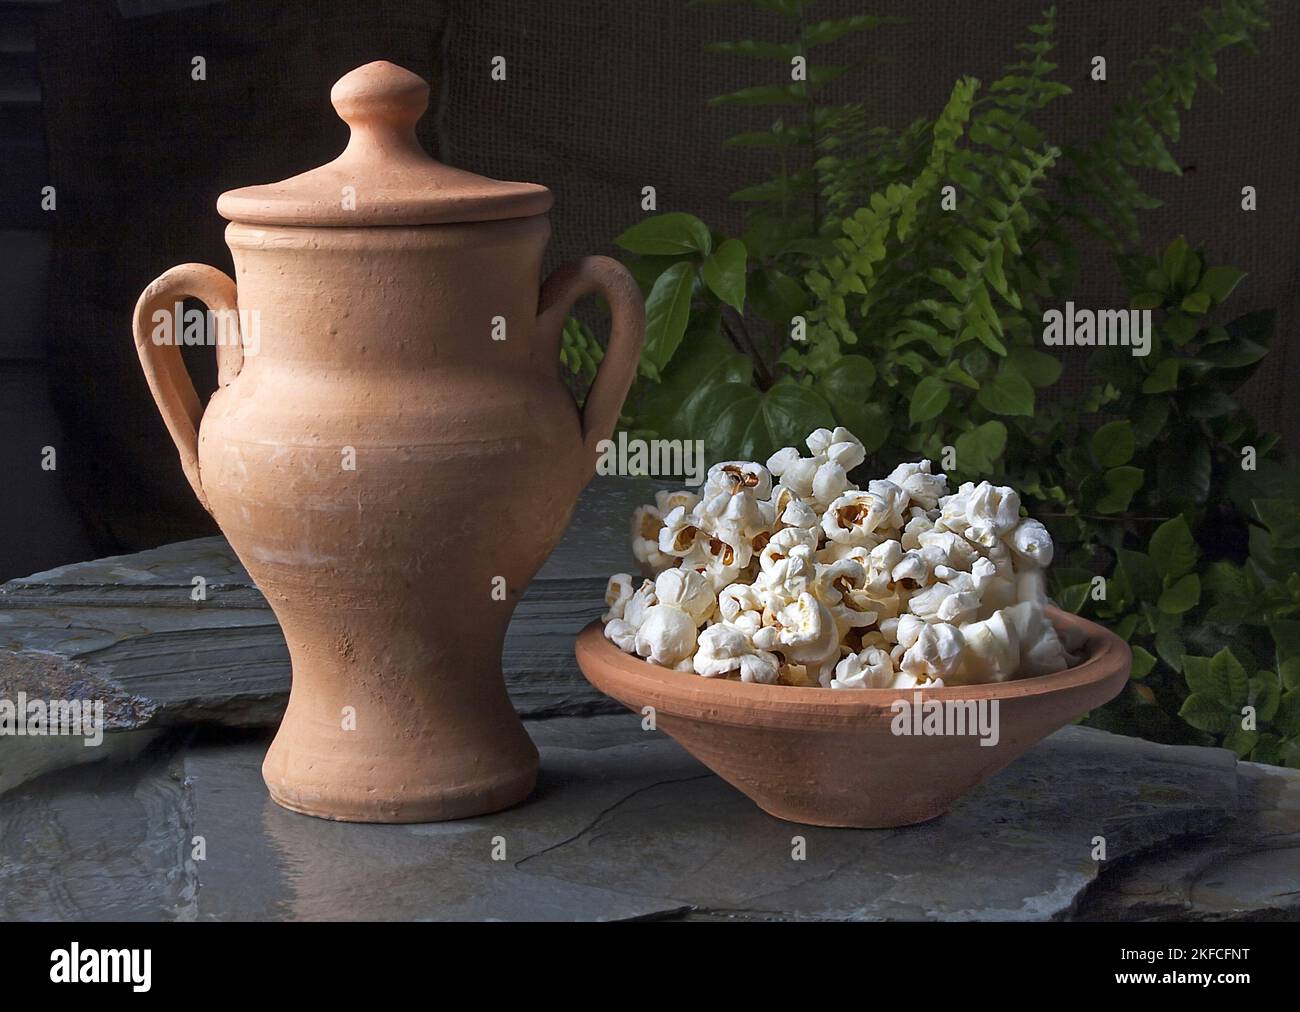 Unter mehreren Ritualen in der afro/brasilianischen Umbanda-Religion wird Popcornbad in Opfergaben an die orixá (eine Gottheit in der afrikanischen Mythologie) verwendet. Stockfoto